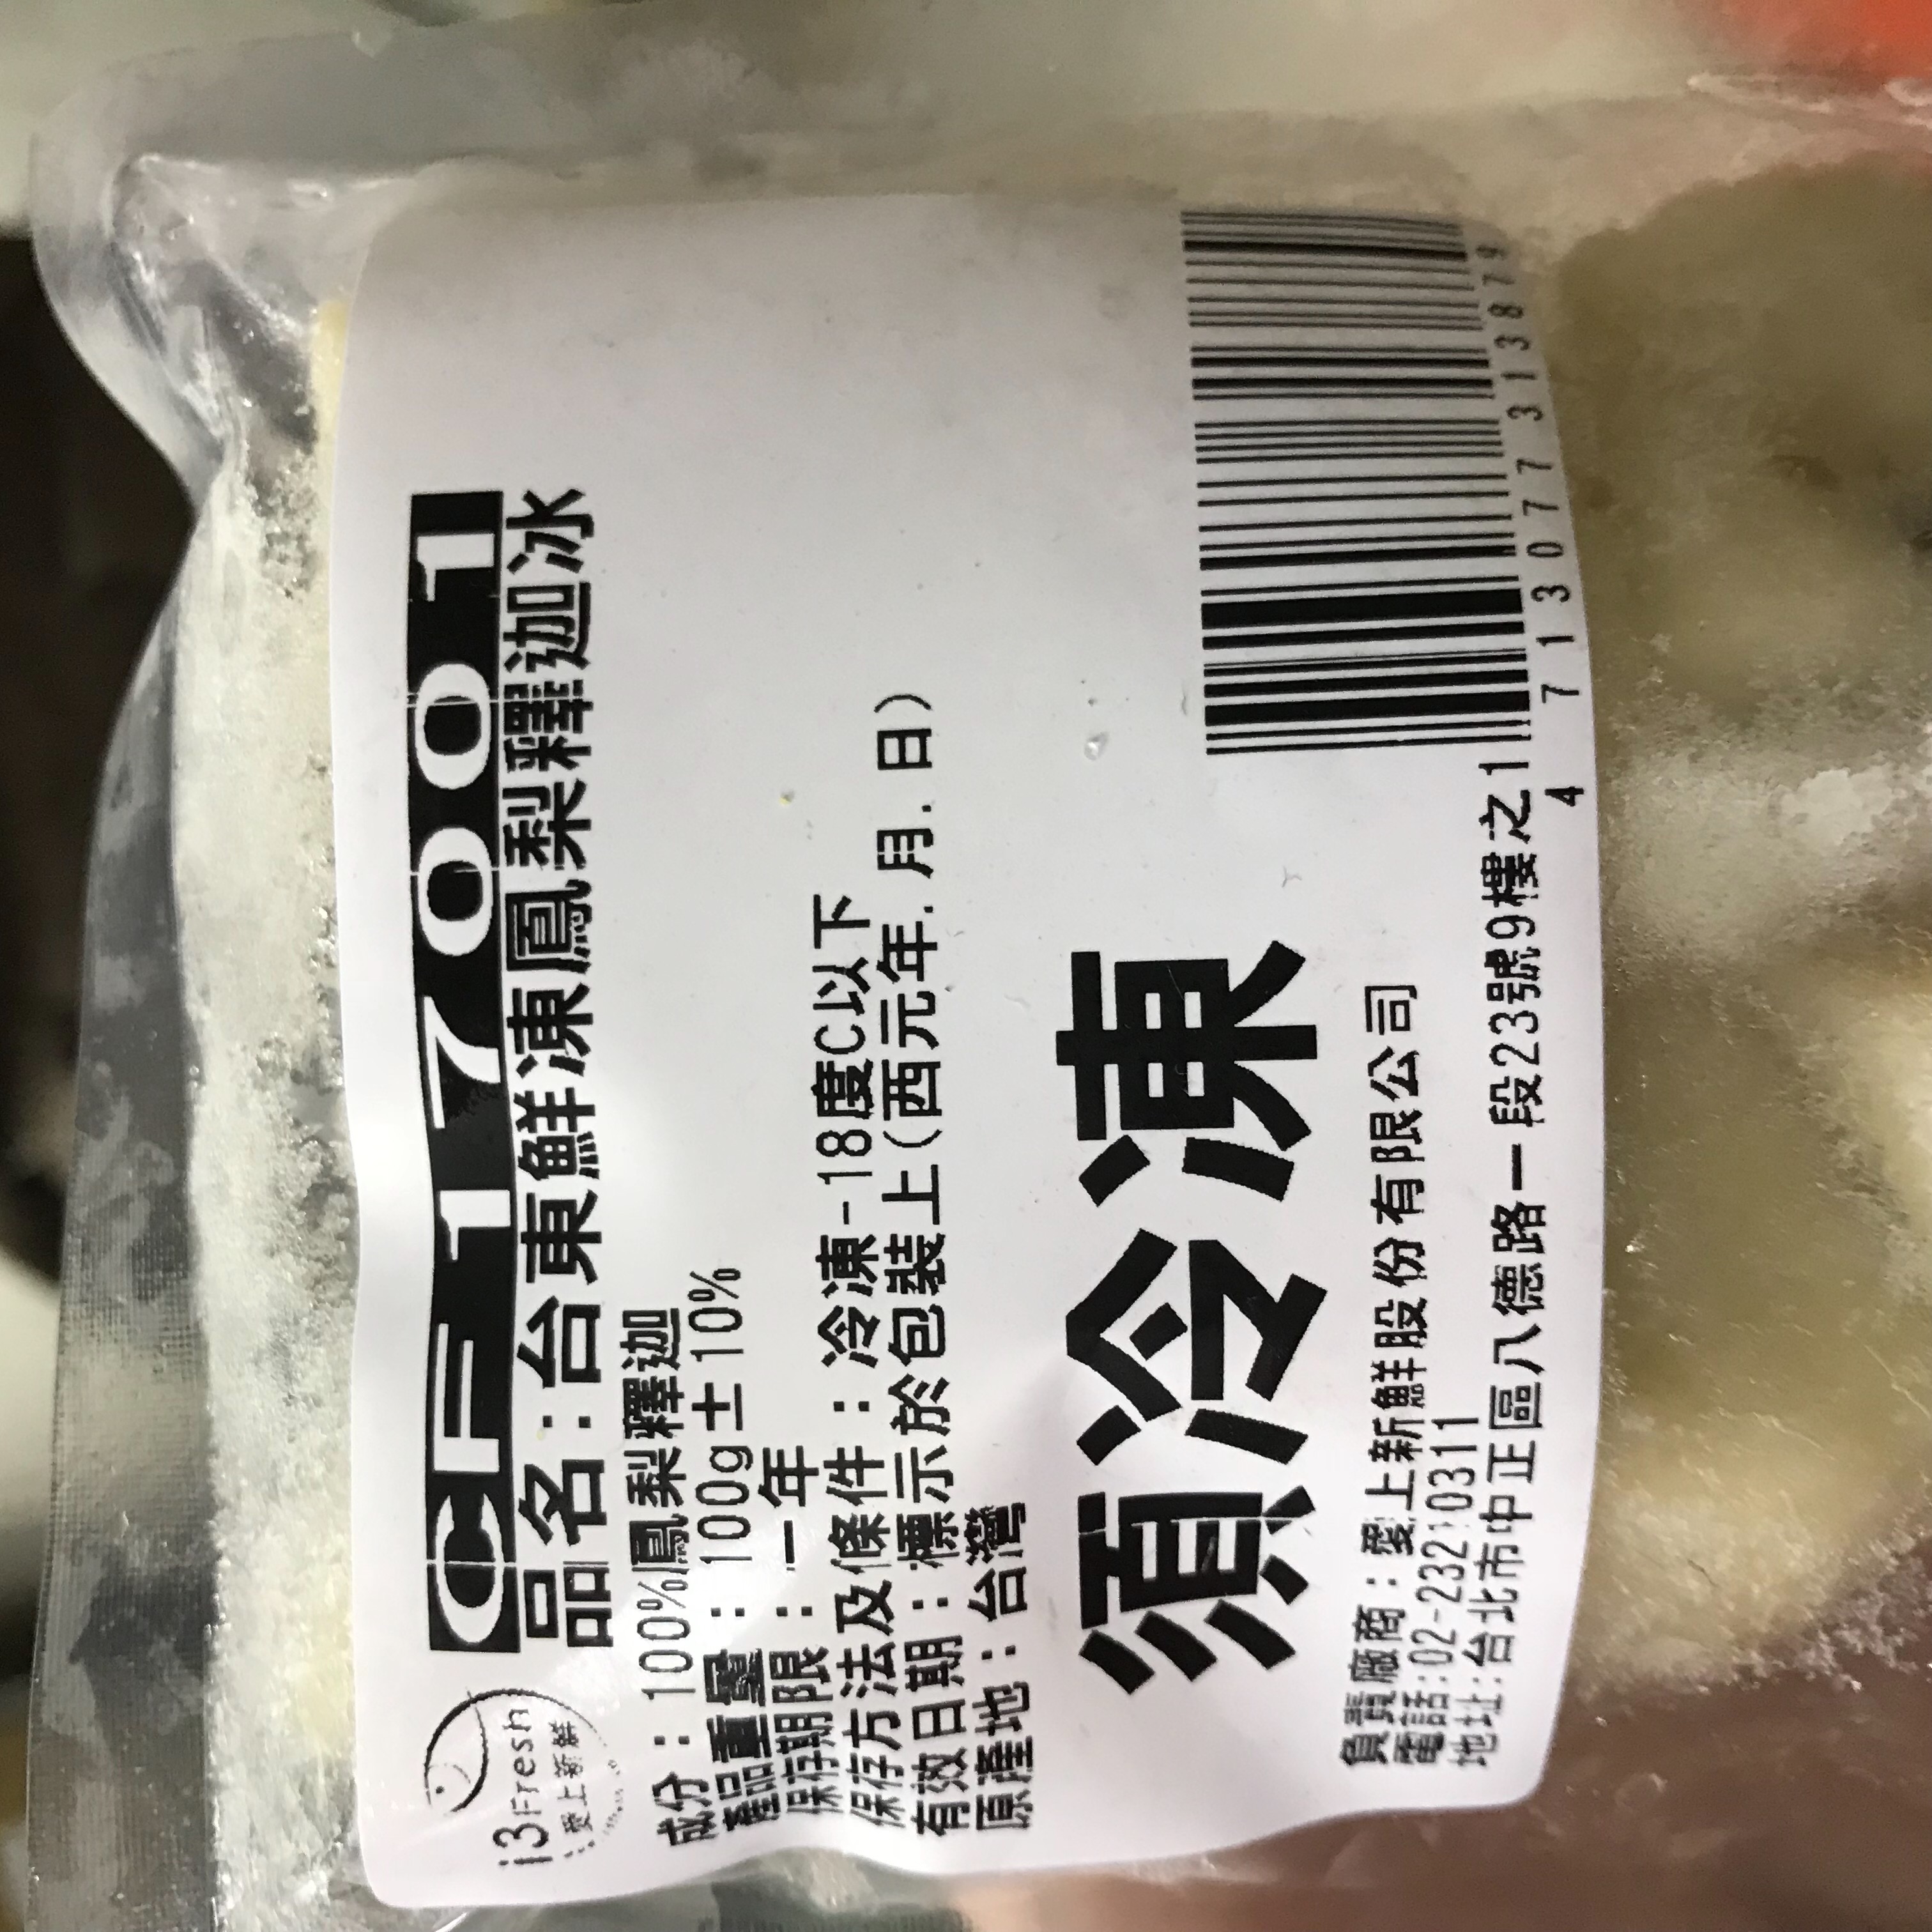       【愛上鮮果】台東鮮凍鳳梨釋迦冰15包組(100g±10%/包)